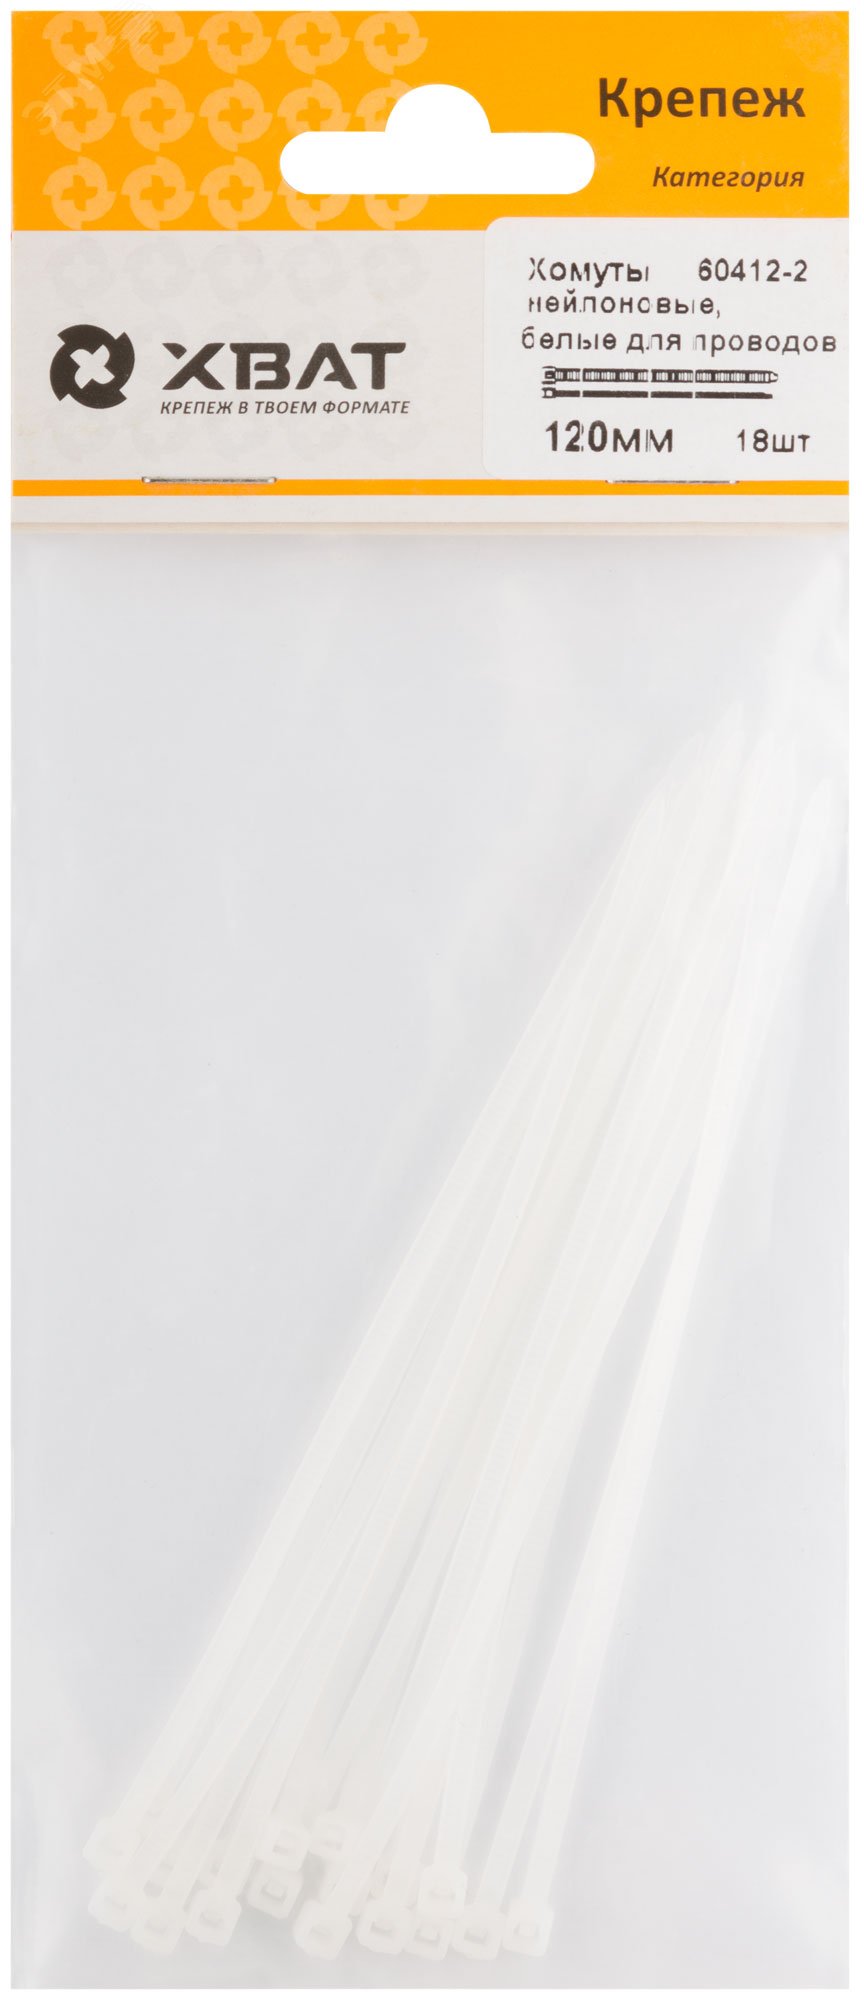 Хомуты нейлоновые, белые для проводов, 120 мм (фасовка 18 шт) 60412-2 ХВАТ - превью 2